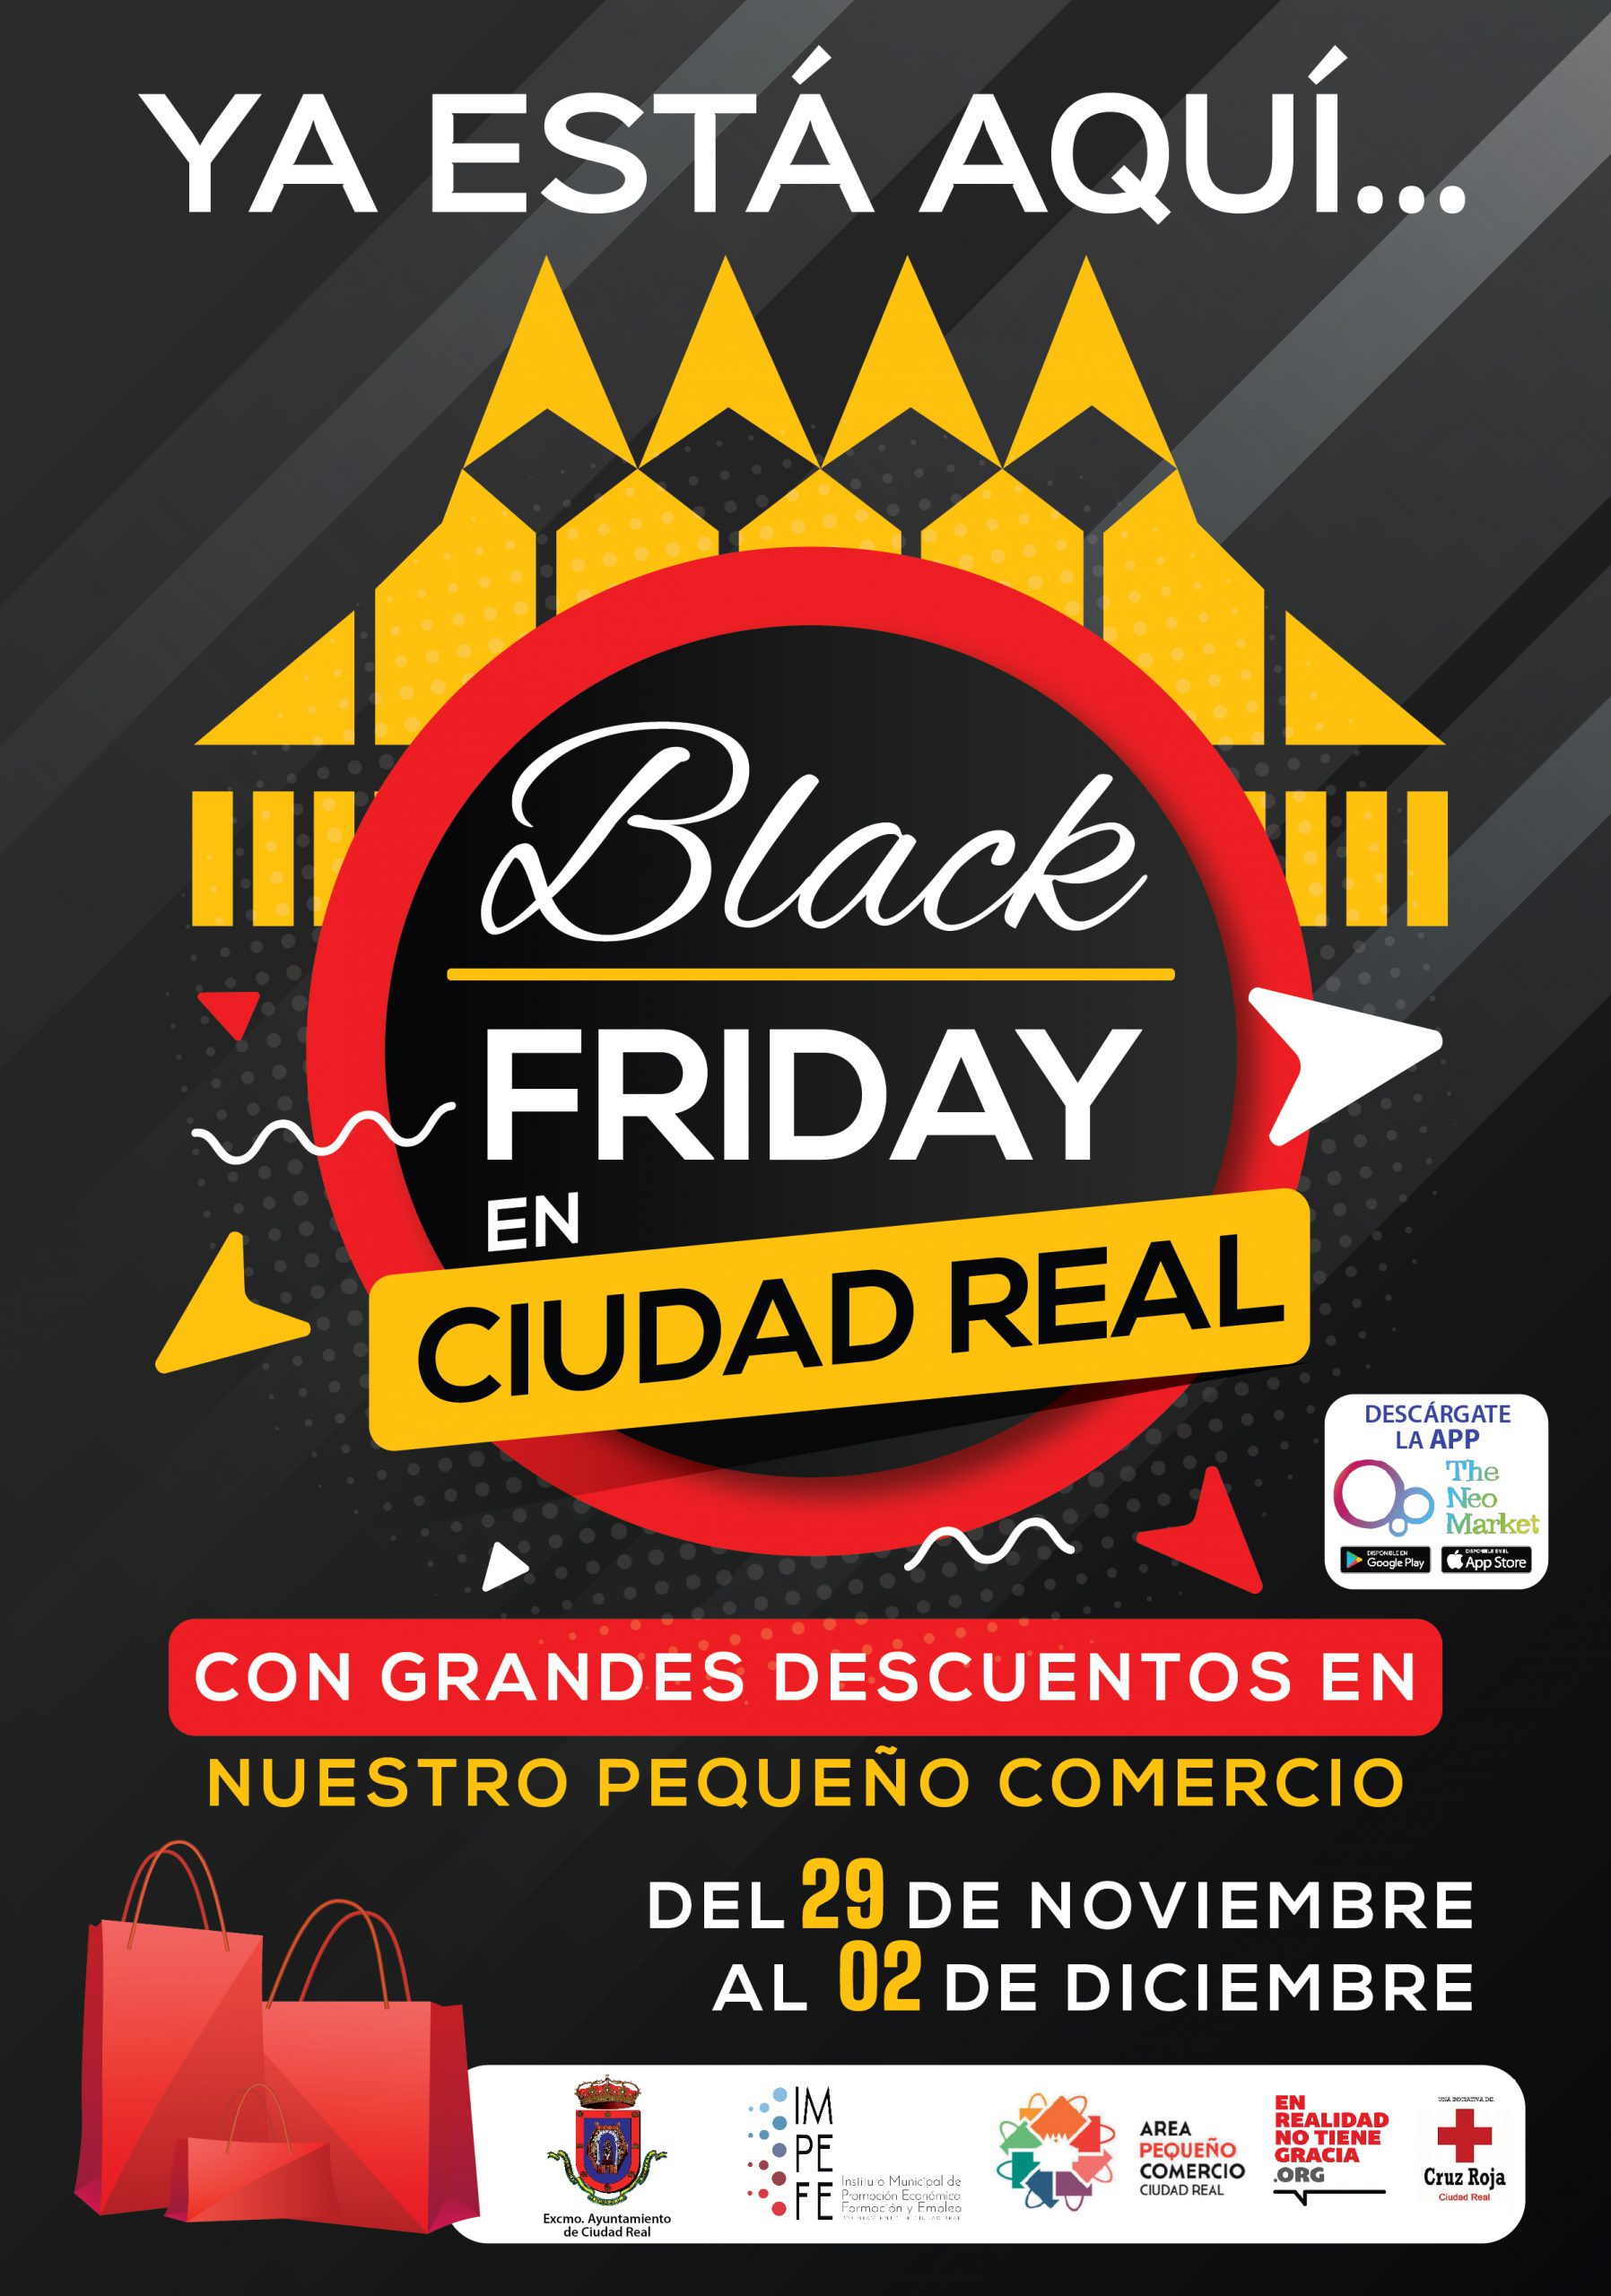 Más de un centenar de comercios ofrecerán descuentos durante el Ciudad Real Black Friday 2019